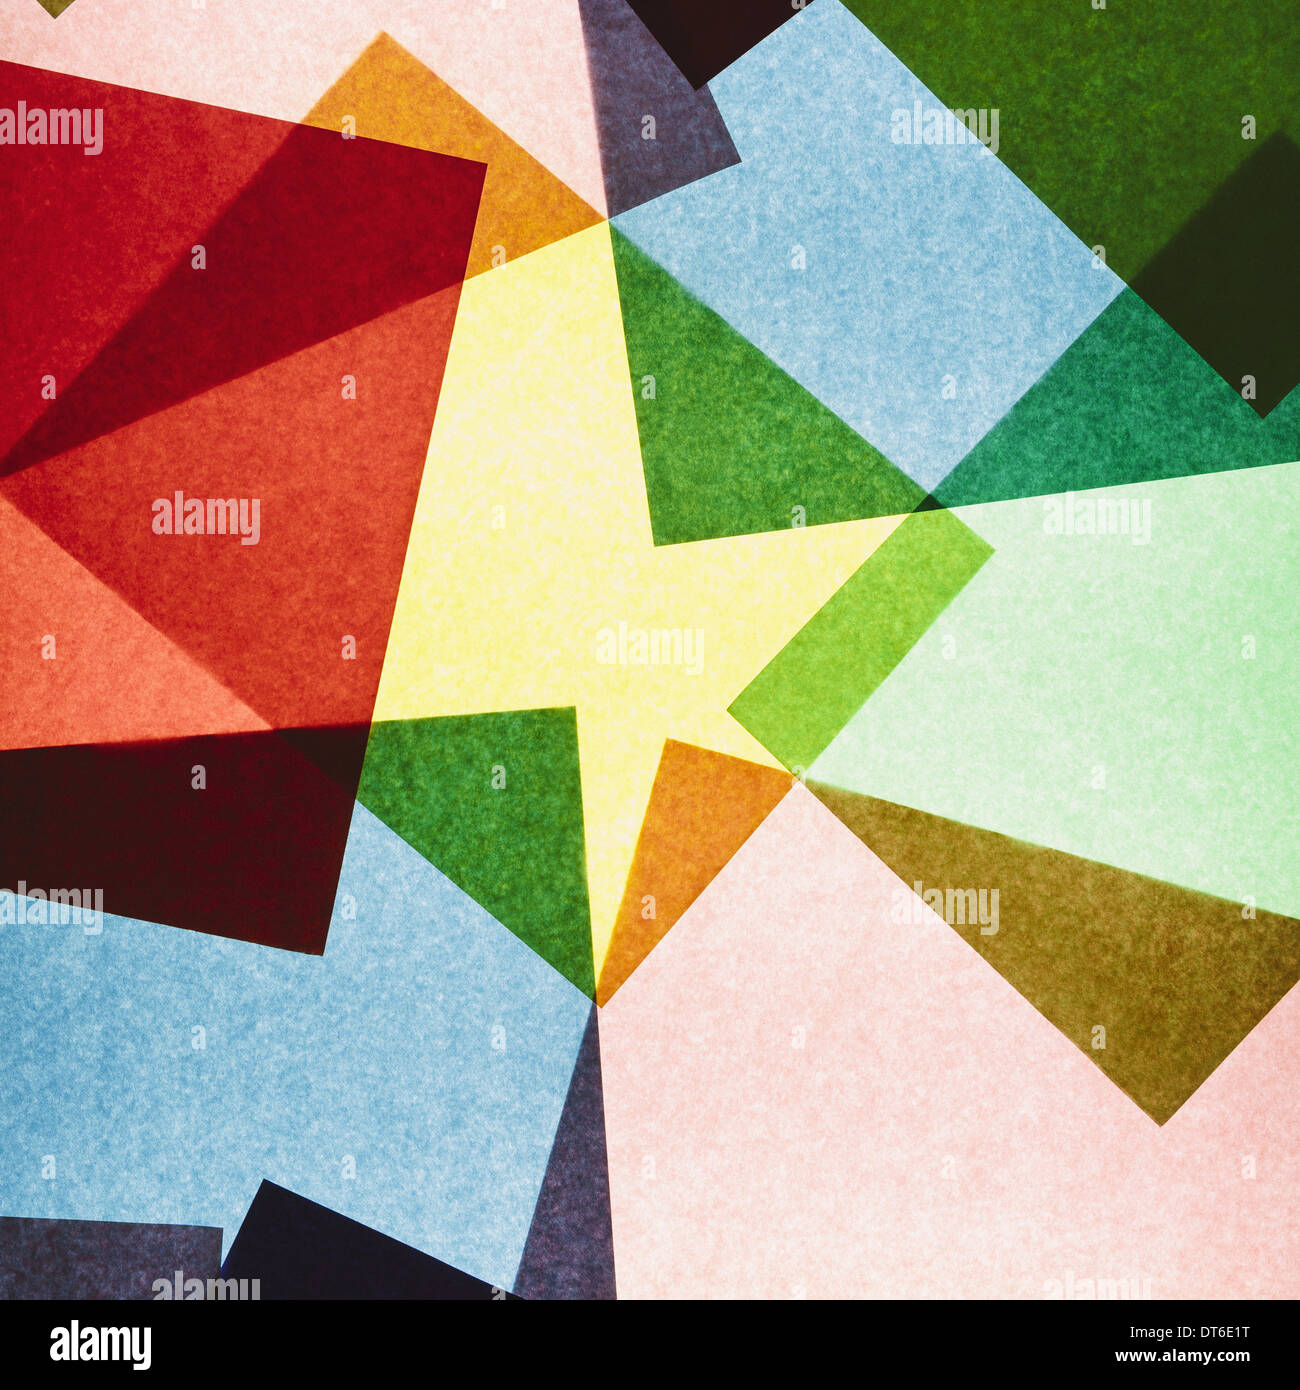 Mehrfarbige Stücke von Recyclingpapier Bau. Formen, Dreiecke und unterschiedlichen Farben, über eine Lichtquelle. Stockfoto